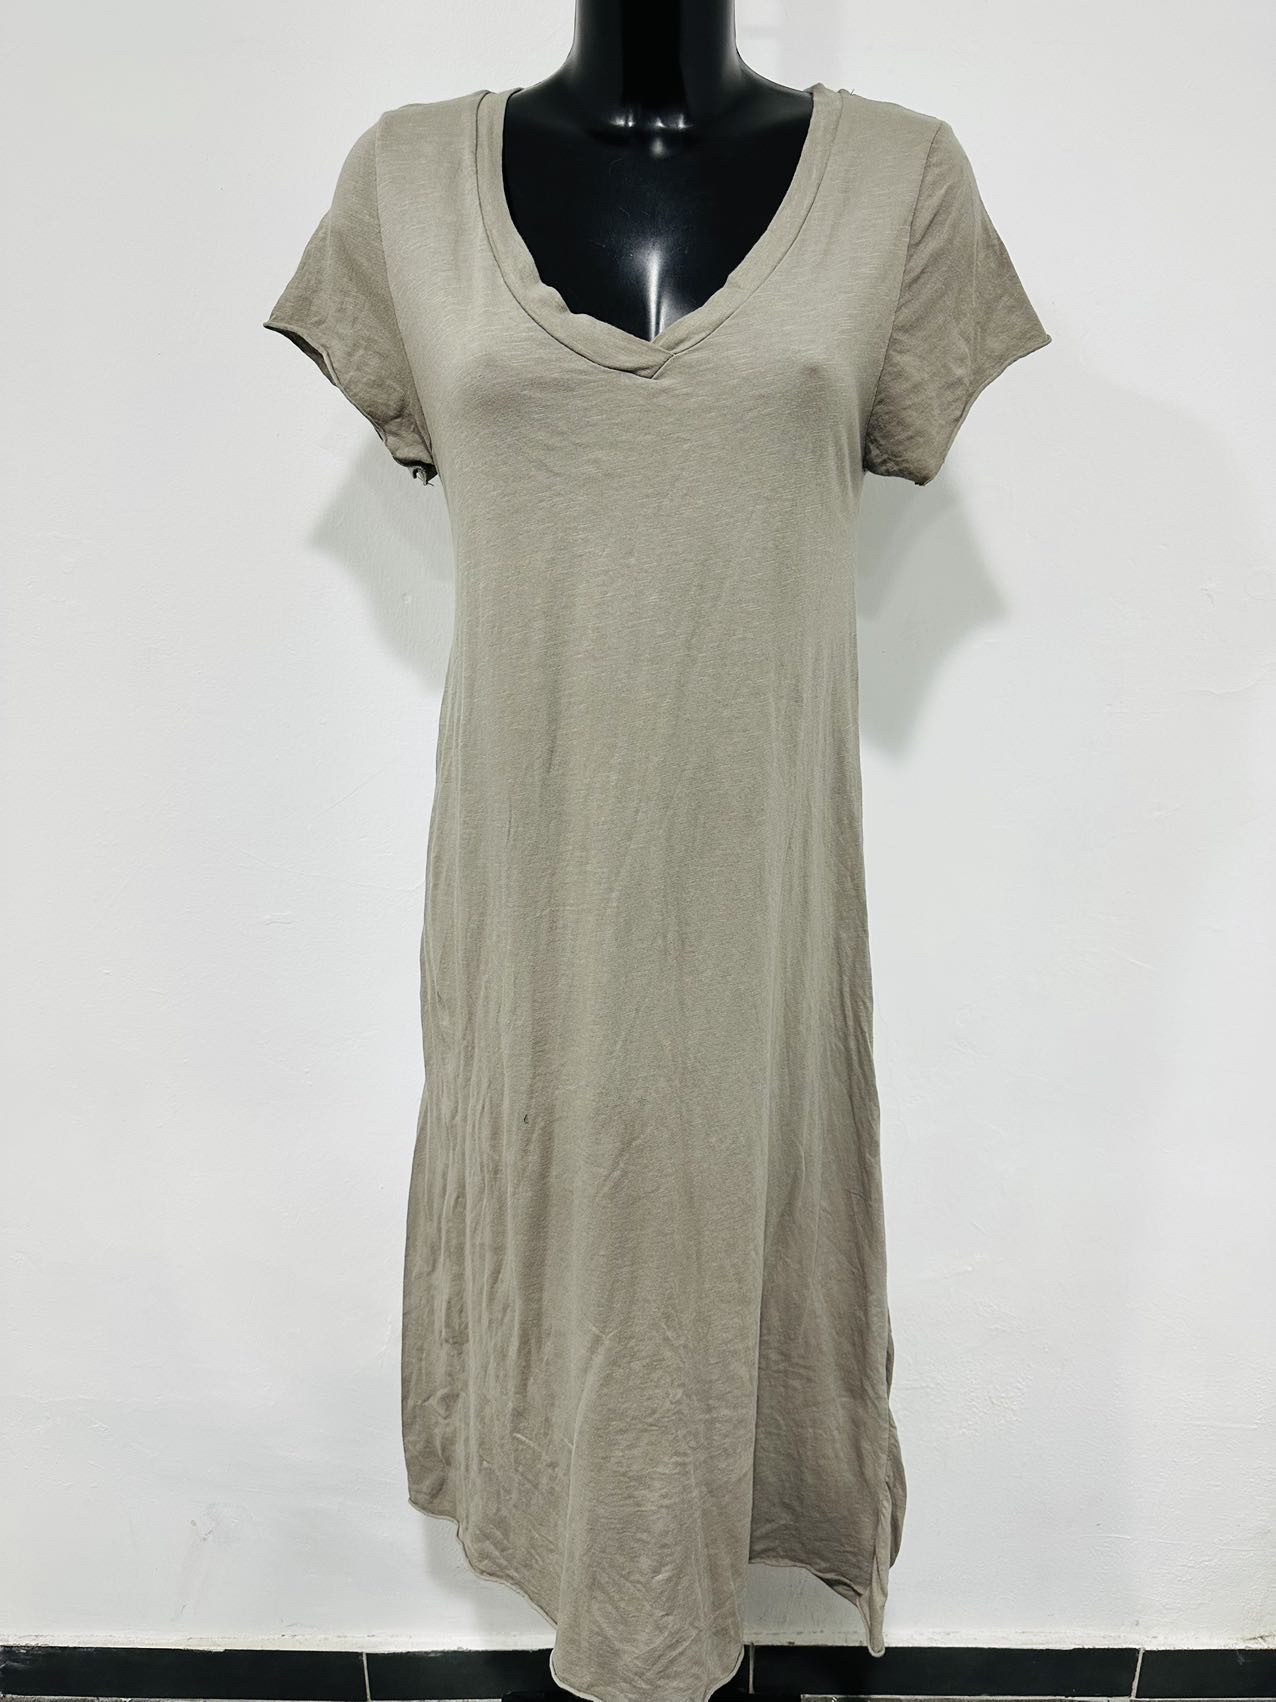 Puur katoen maxi jurk met v-hals - a-lijn - in kleur TAUPE - luchtig en moderne zomer jurk maat 36/38